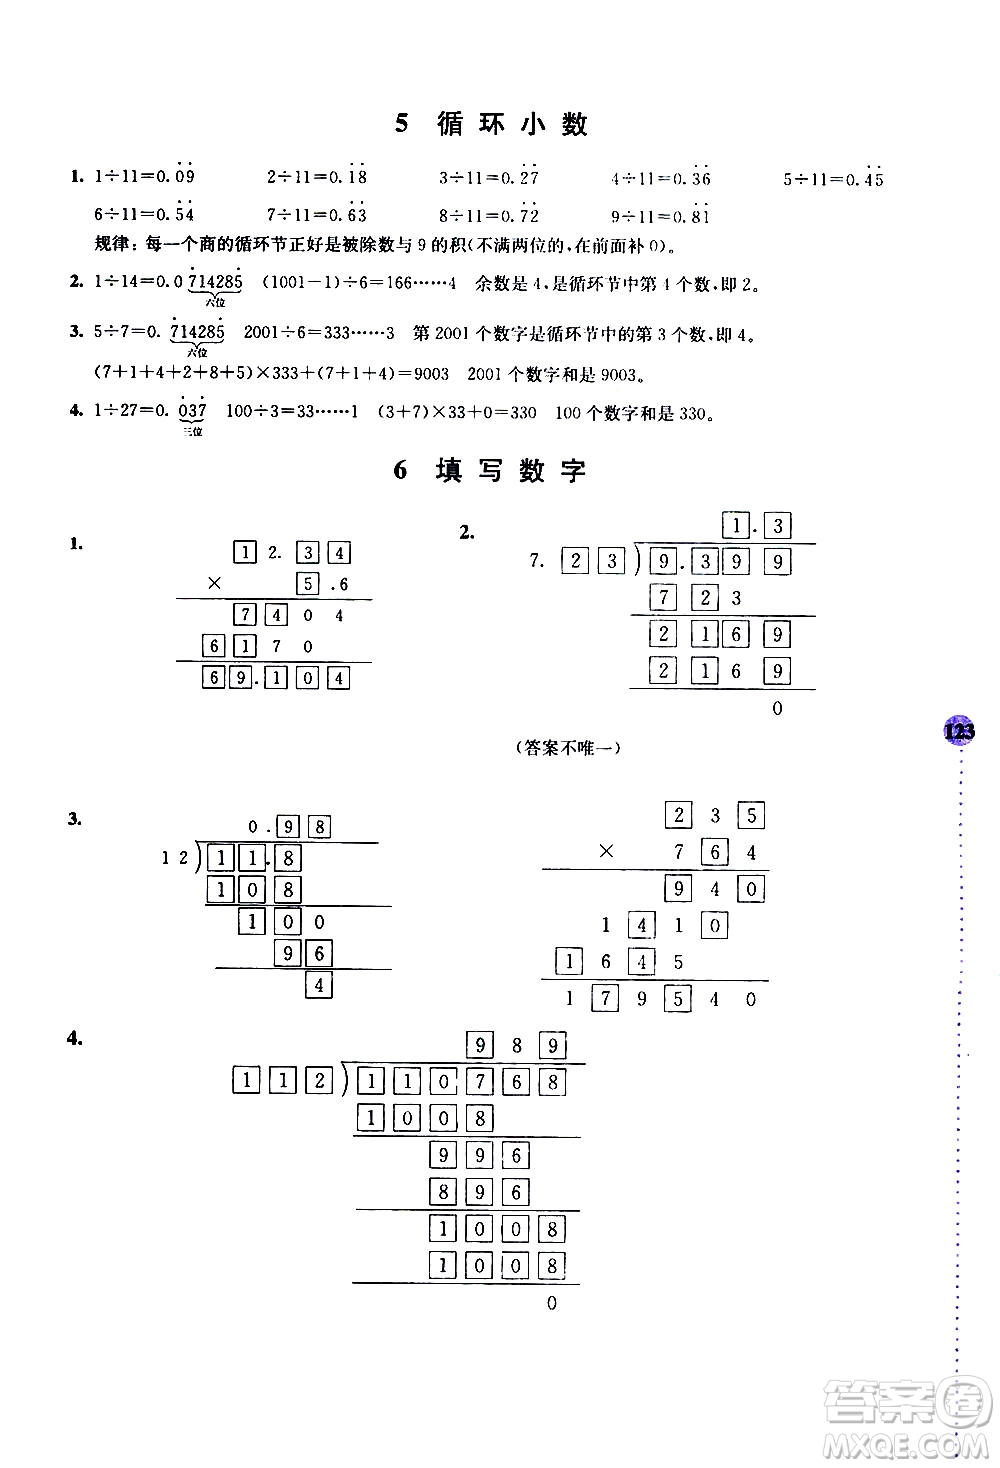 南京大学出版社2020年小学数学拓展学案60课5年级参考答案